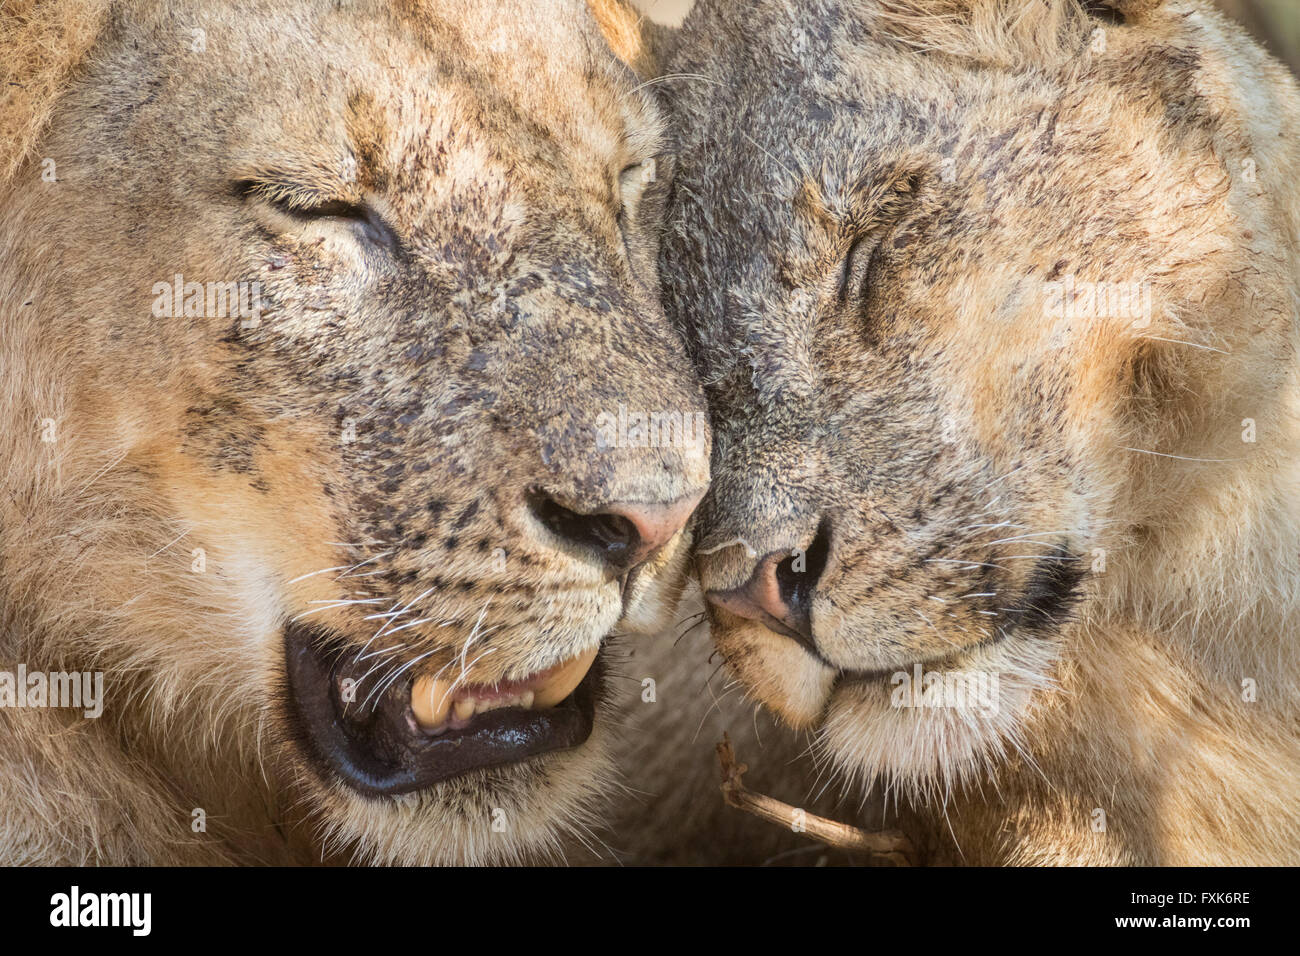 Les lions (Panthera leo), portrait, l'affichage de l'affection, le parc national de South Luangwa, en Zambie Banque D'Images